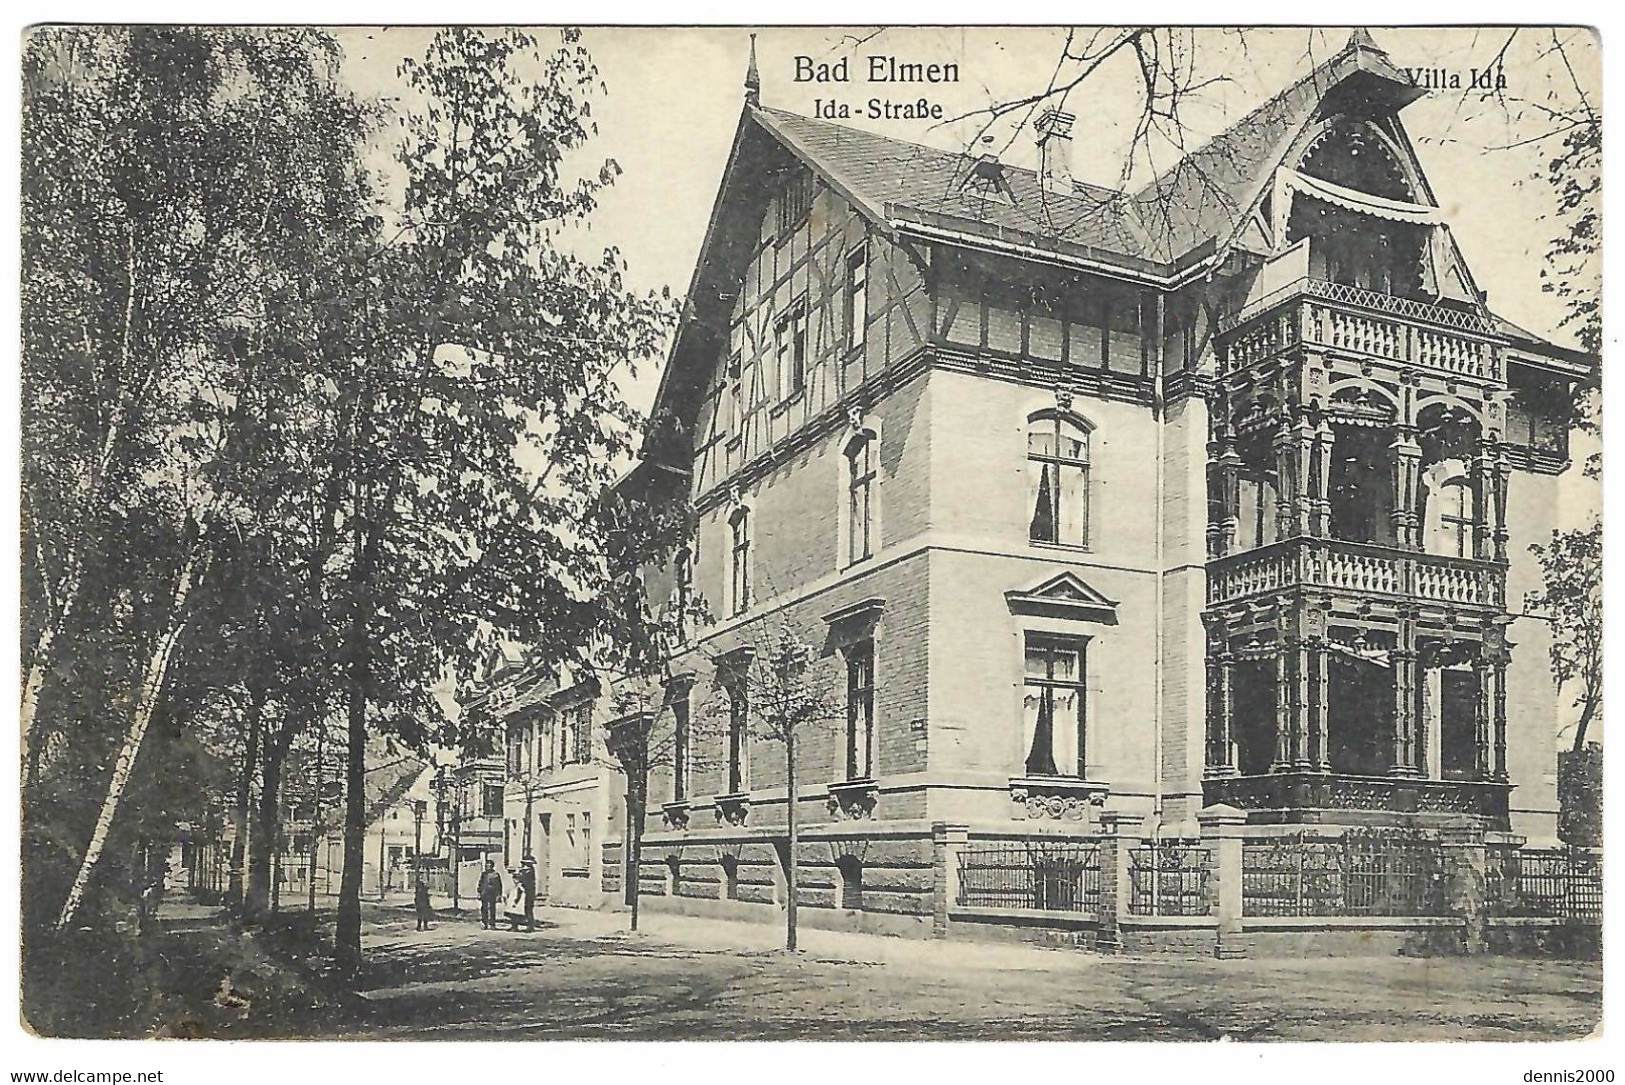 SCHOENEBECK - BAD ELMEN - Bad Salzelmen - Ida Starsse - Villa Ida - Oblit. 1916 - Schoenebeck (Elbe)